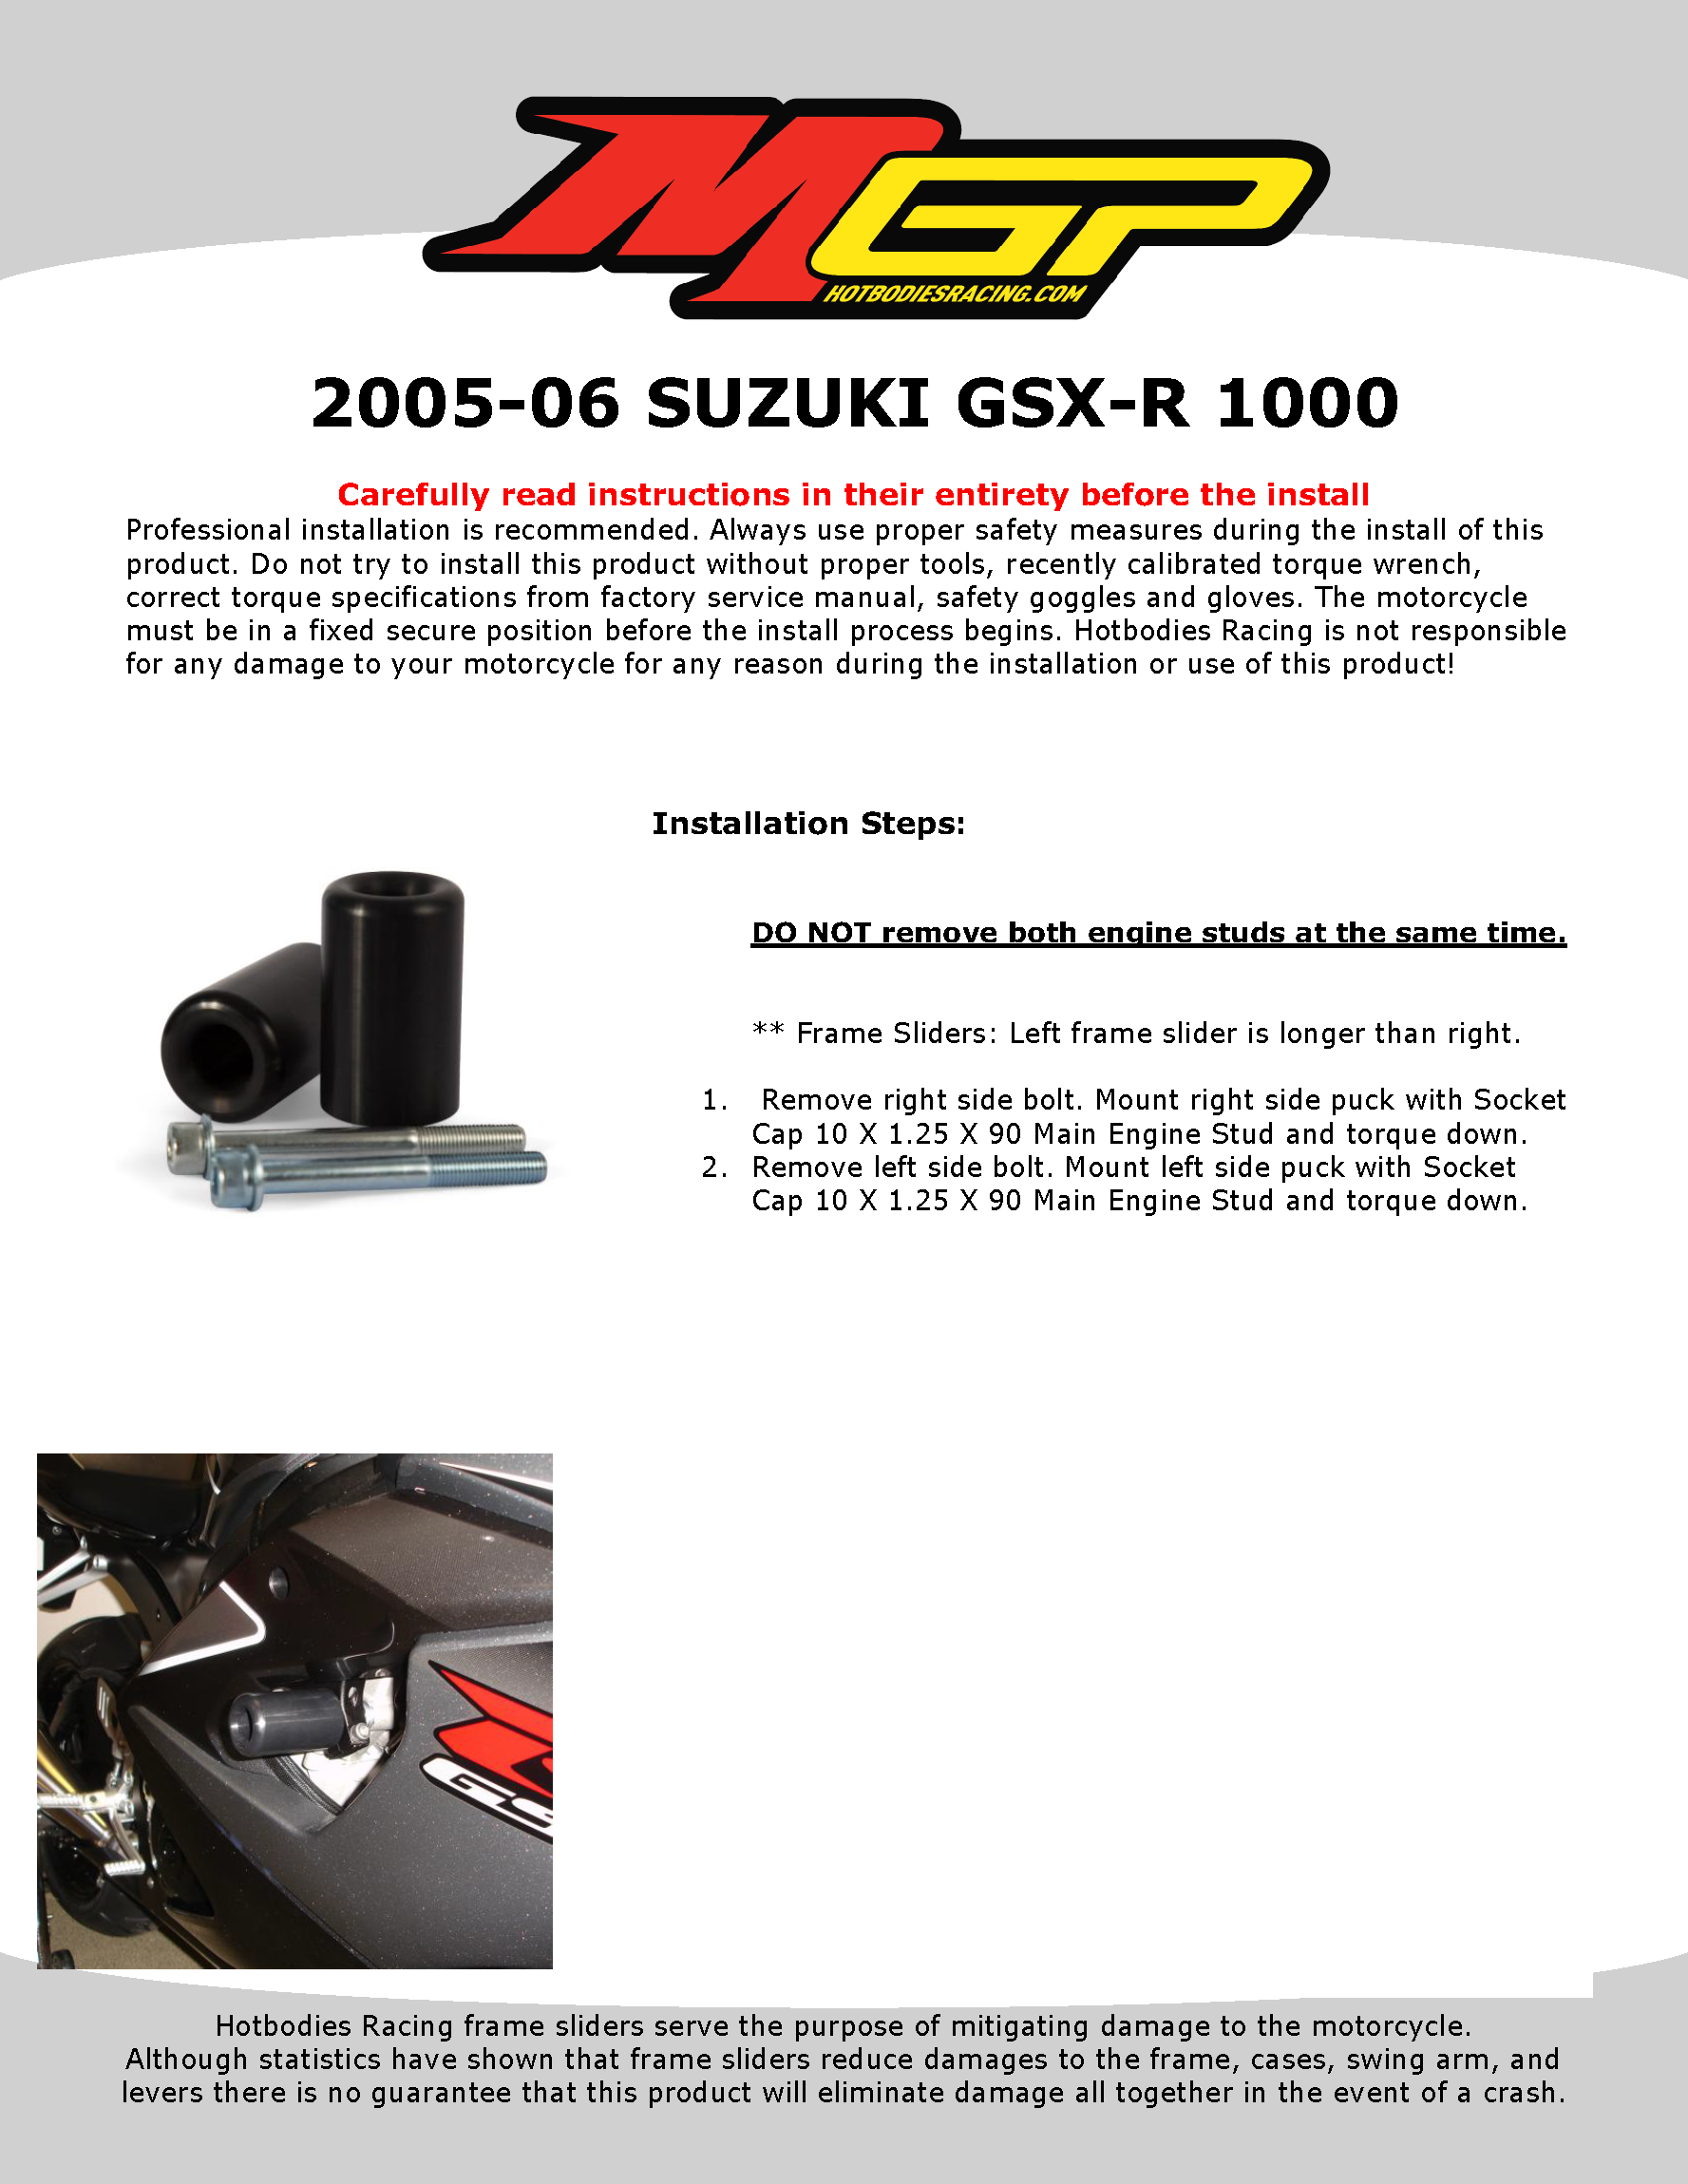 

2005-06 SUZUKI GSX-R 1000

